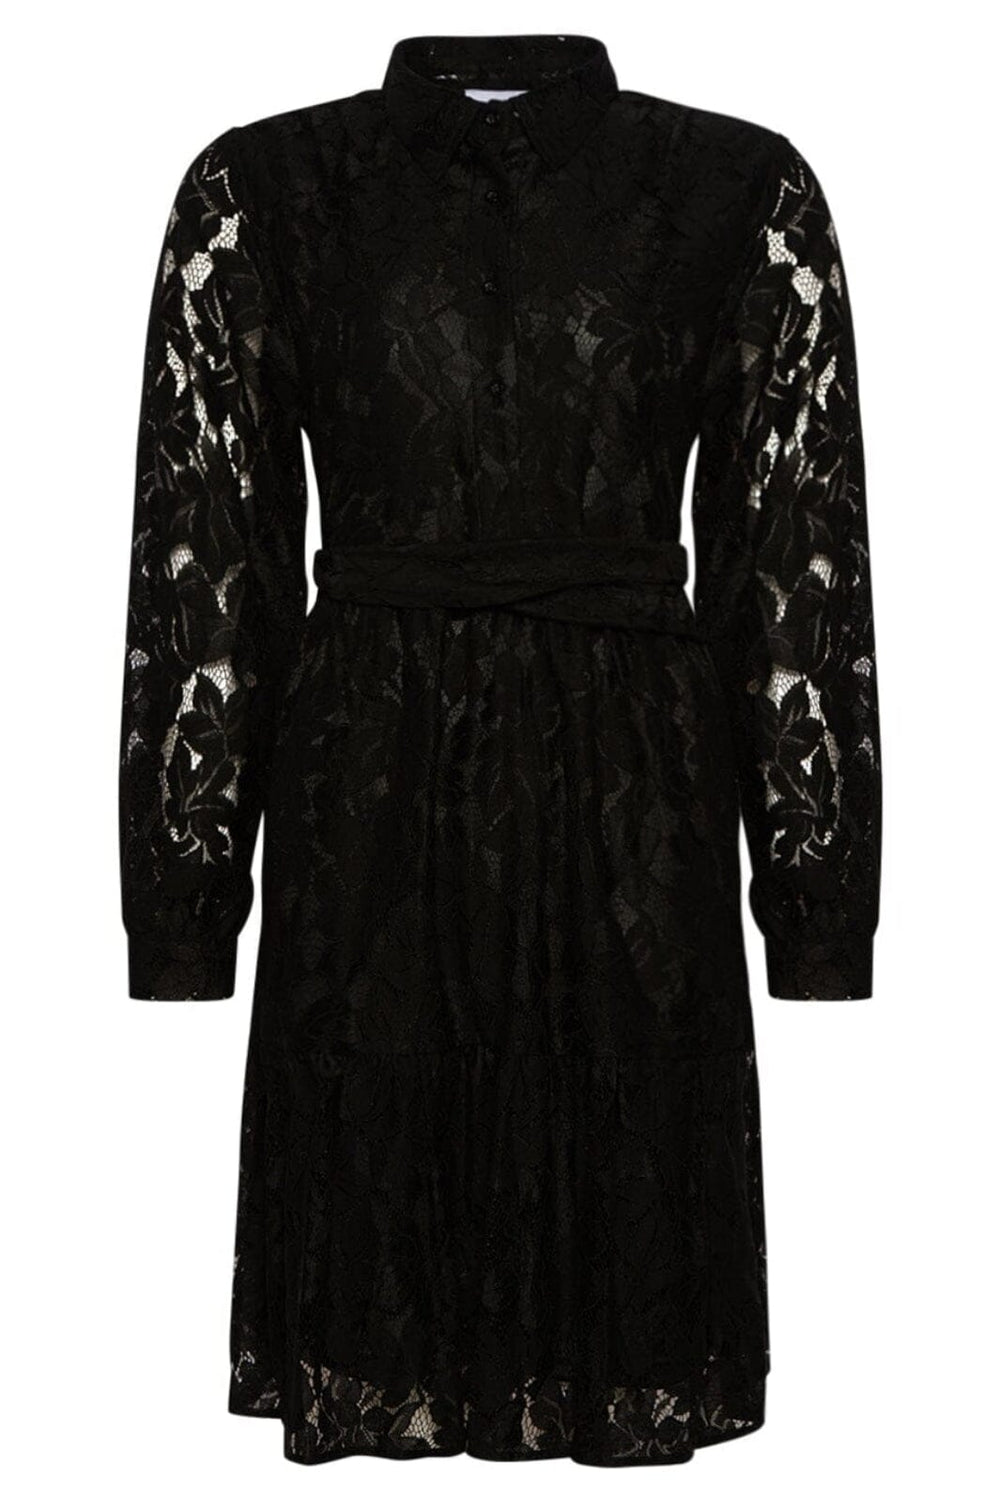 Noella - Pixi Shirt Dress Lace - Black Kjoler 